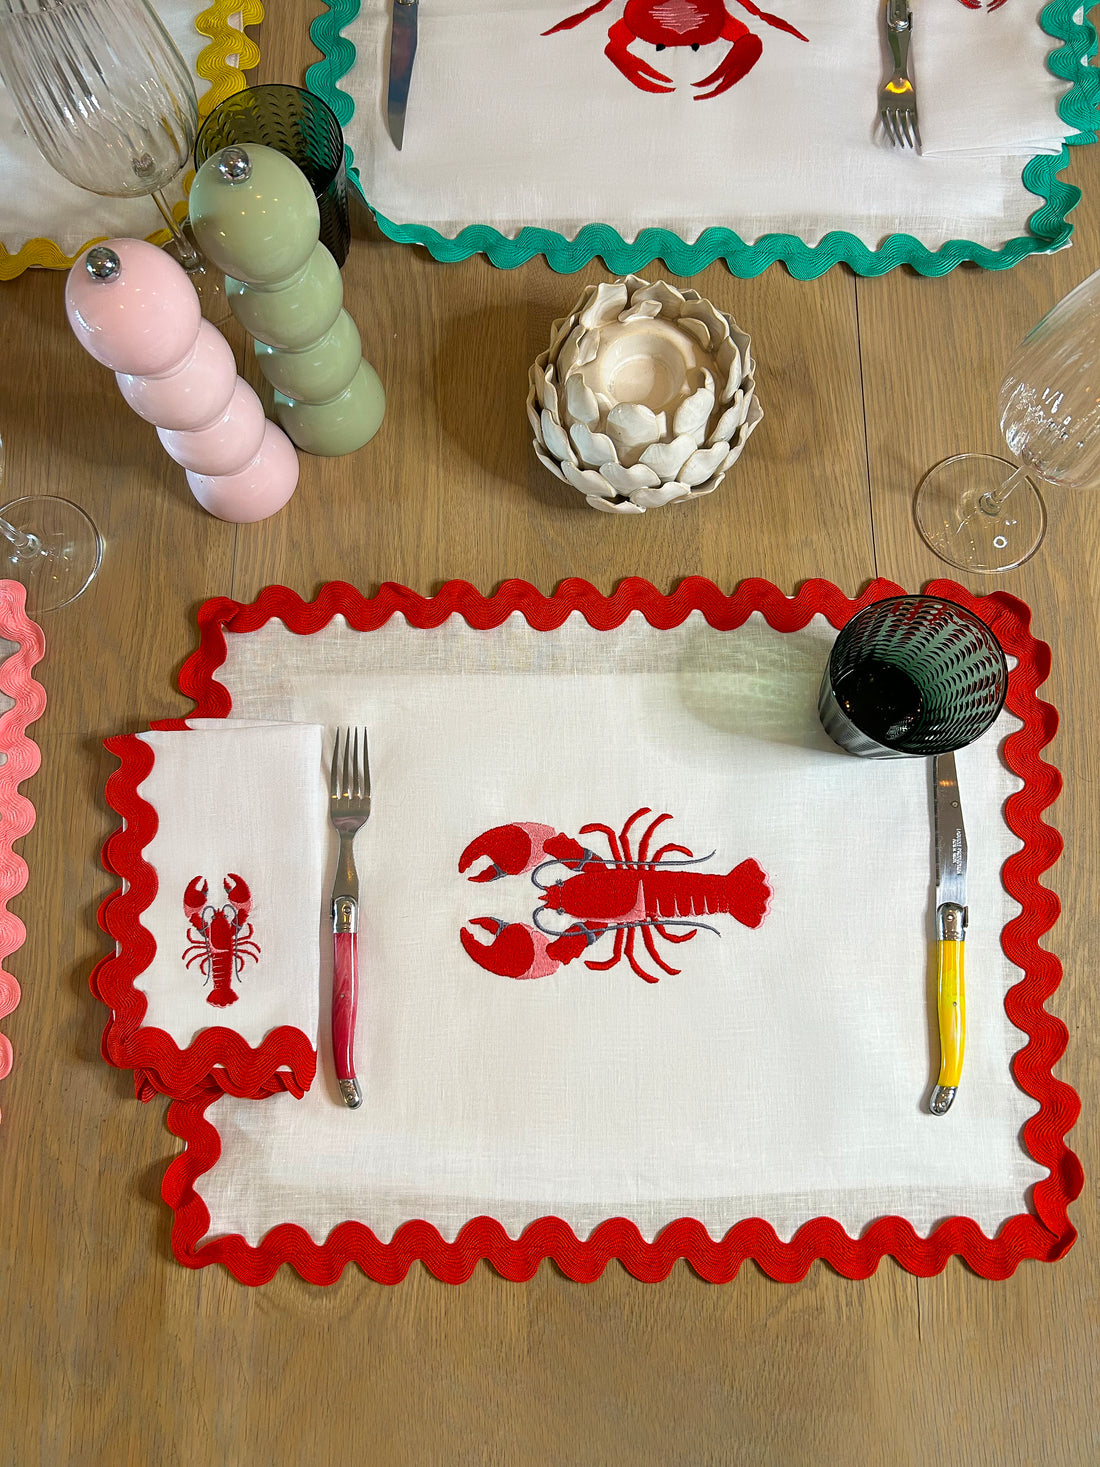 Lobster Embroidered Napkins |Set of 4